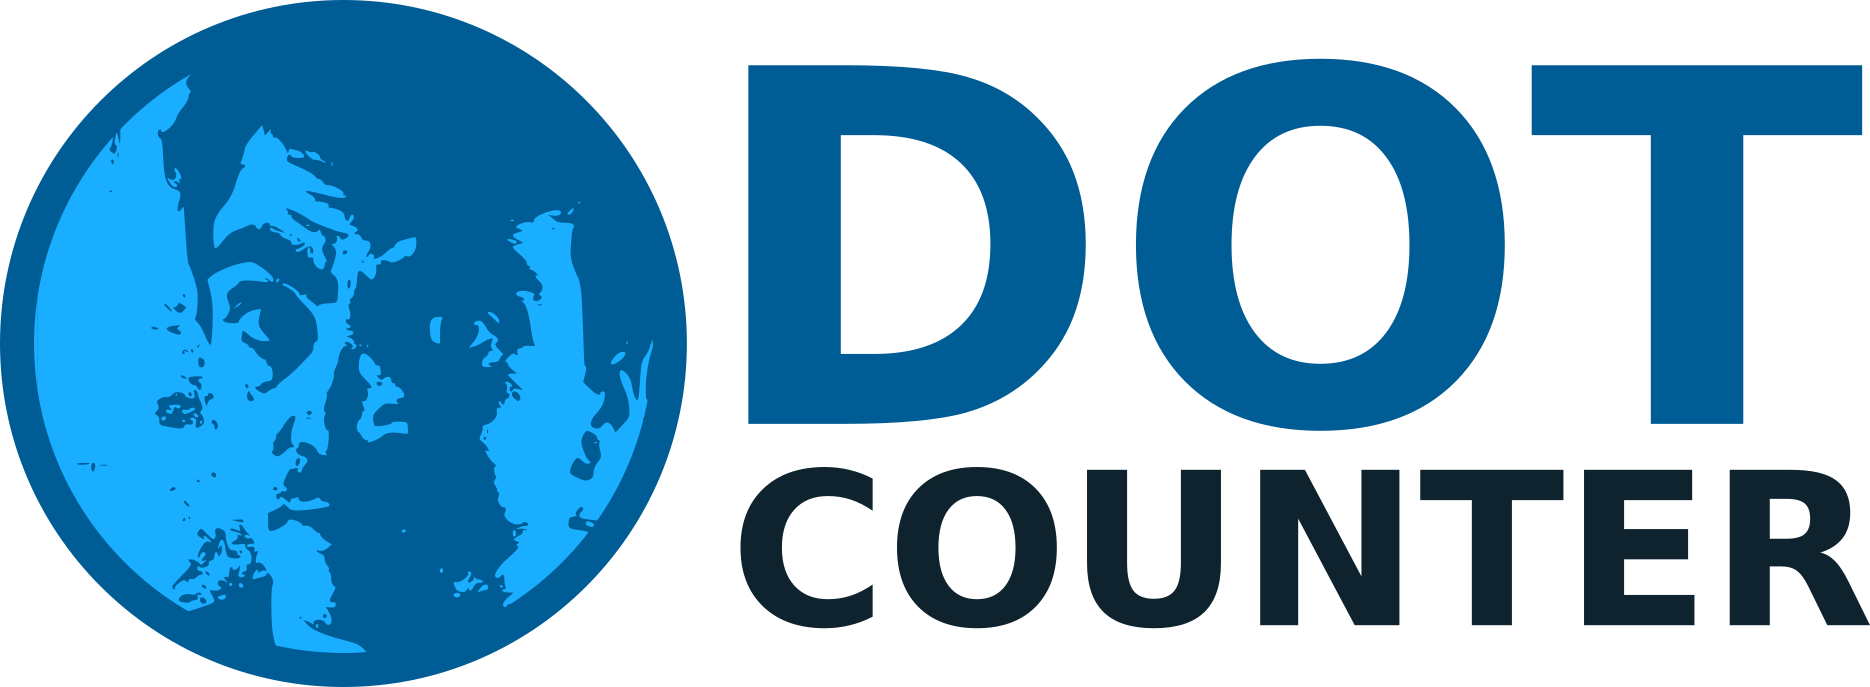 ddot logo